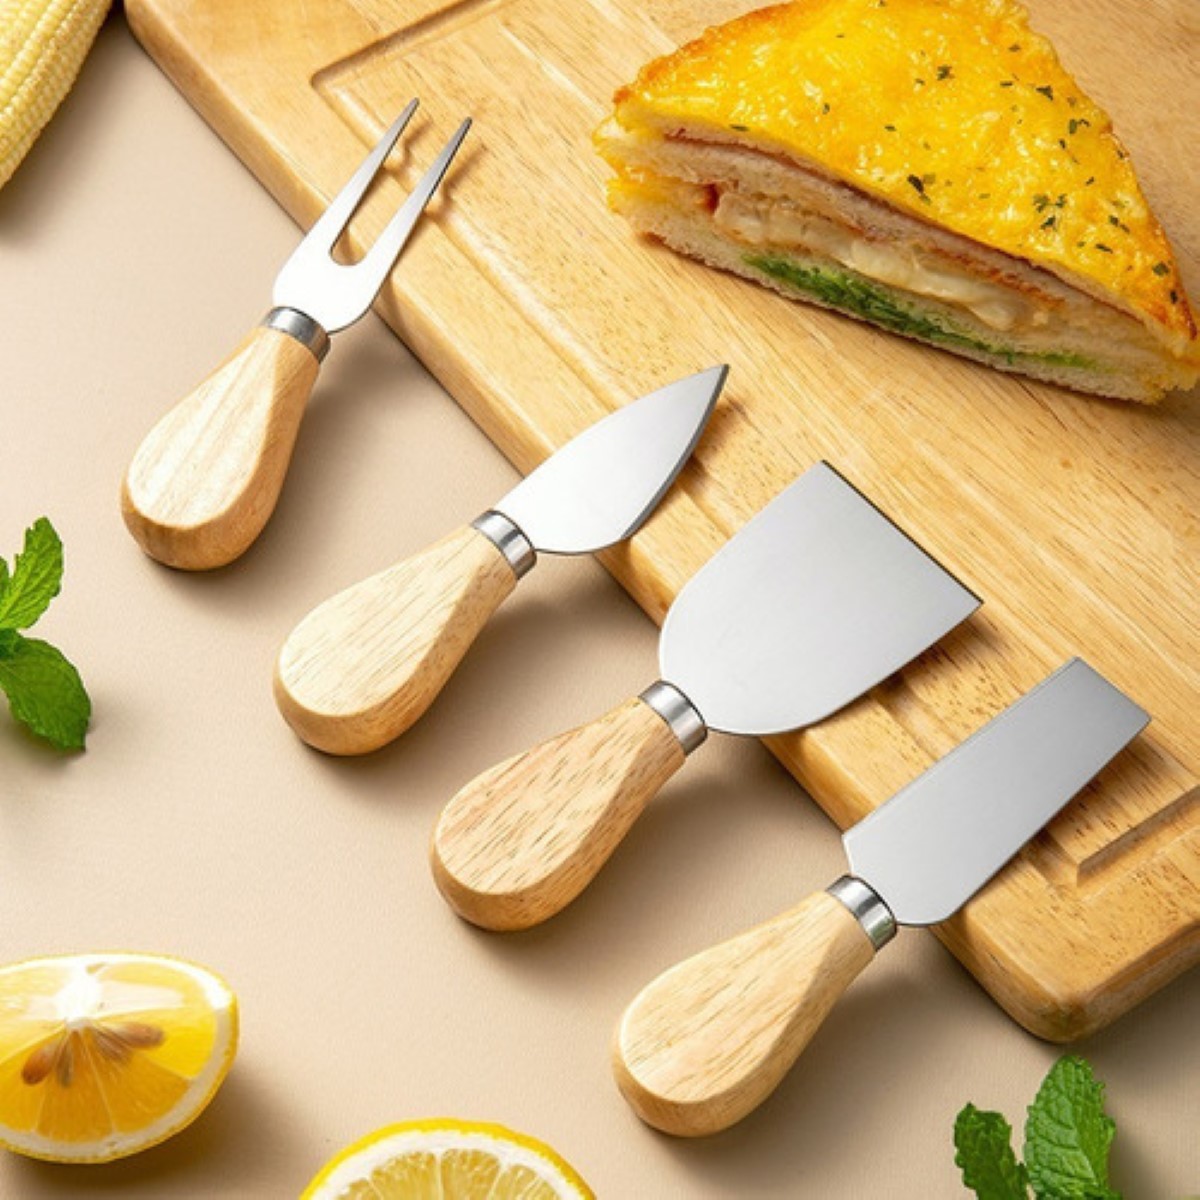 Cuchillos de queso · Cuchillos de cocina · El Corte Inglés (9)